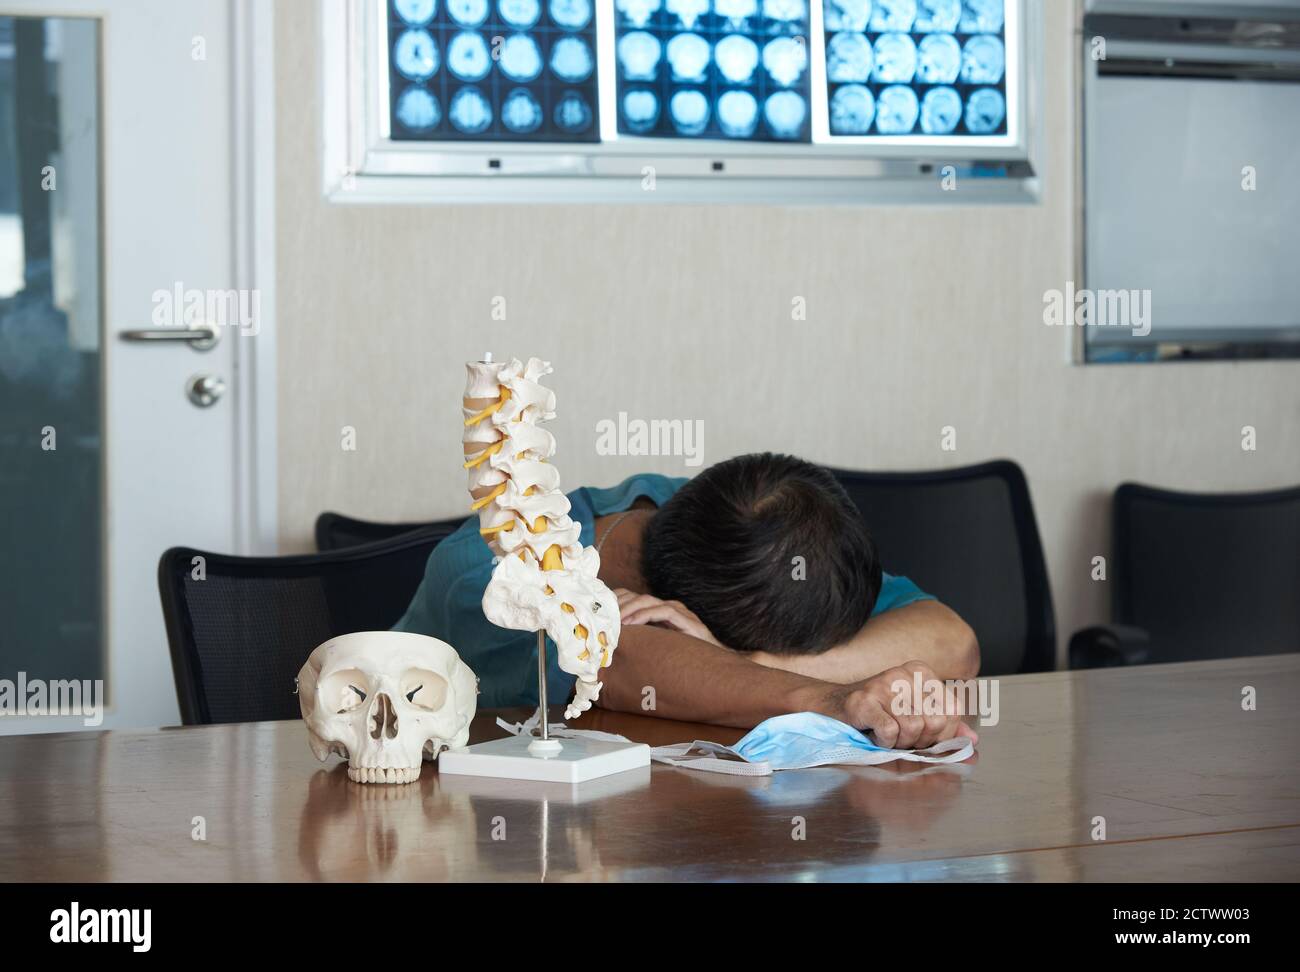 Ein asiatischer Neurochirurg fühlt sich müde und schläft in der medizinischen Praxis. Schädel- und Lendenwirbelsäule Modell auf dem Tisch, Gehirn-MRT an Bord. Stockfoto